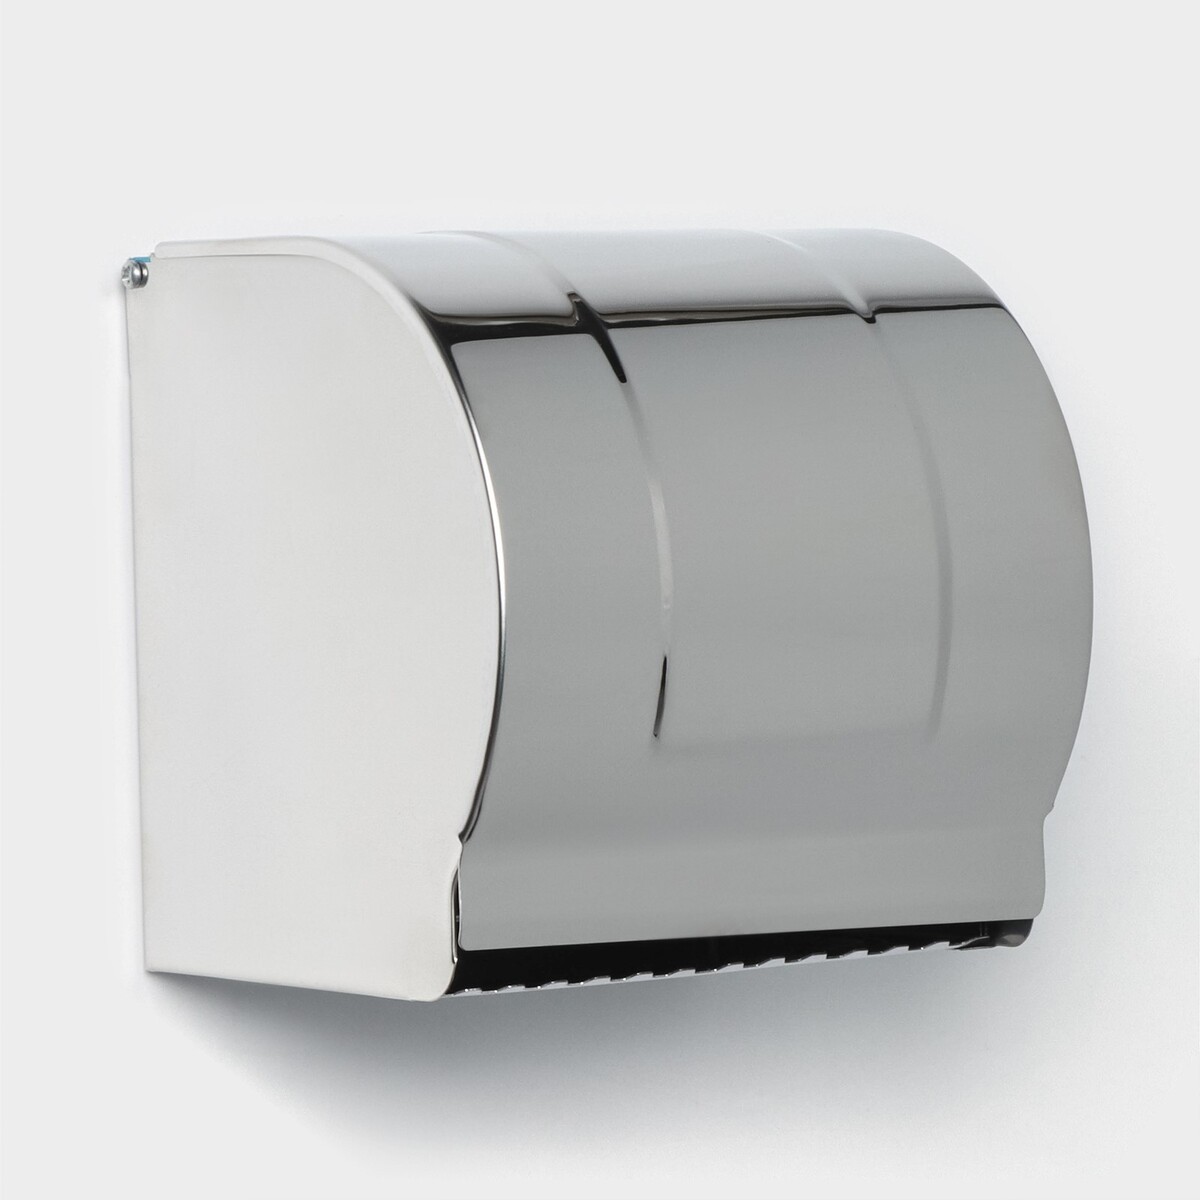 Держатель для туалетной бумаги, без втулки 12×12,5×12 см, цвет хром зеркальный светильник встраиваемый св 03 04 g5 3 mr16 50 вт зеркальный хром tdm electric sq0359 0052